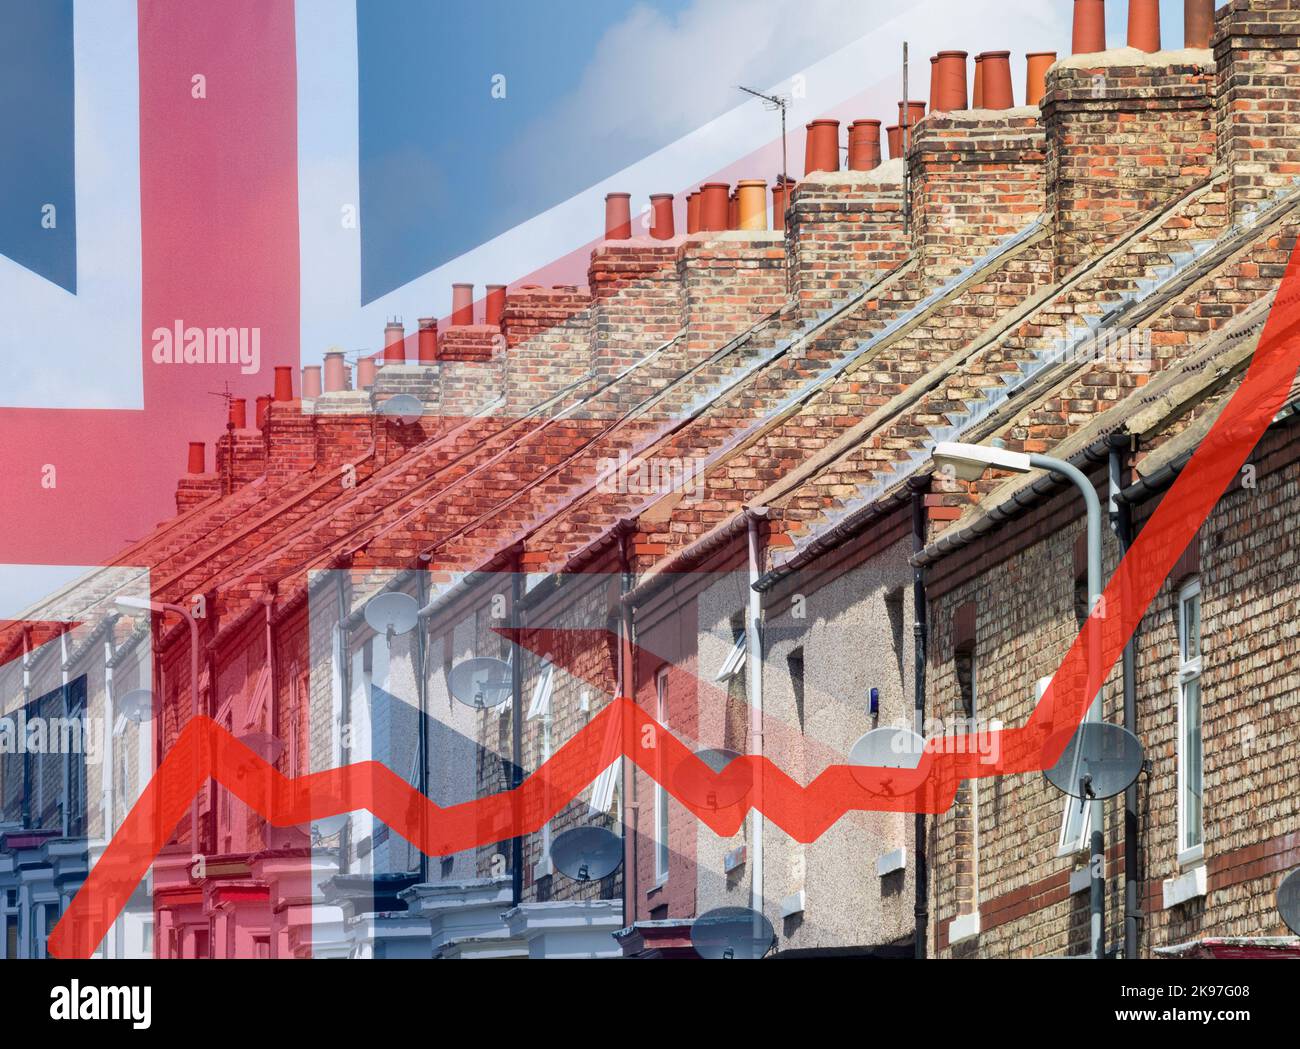 Economia del Regno Unito, mercato immobiliare, crisi del costo della vita, mutui, prestiti, recessione, inflazione Foto Stock